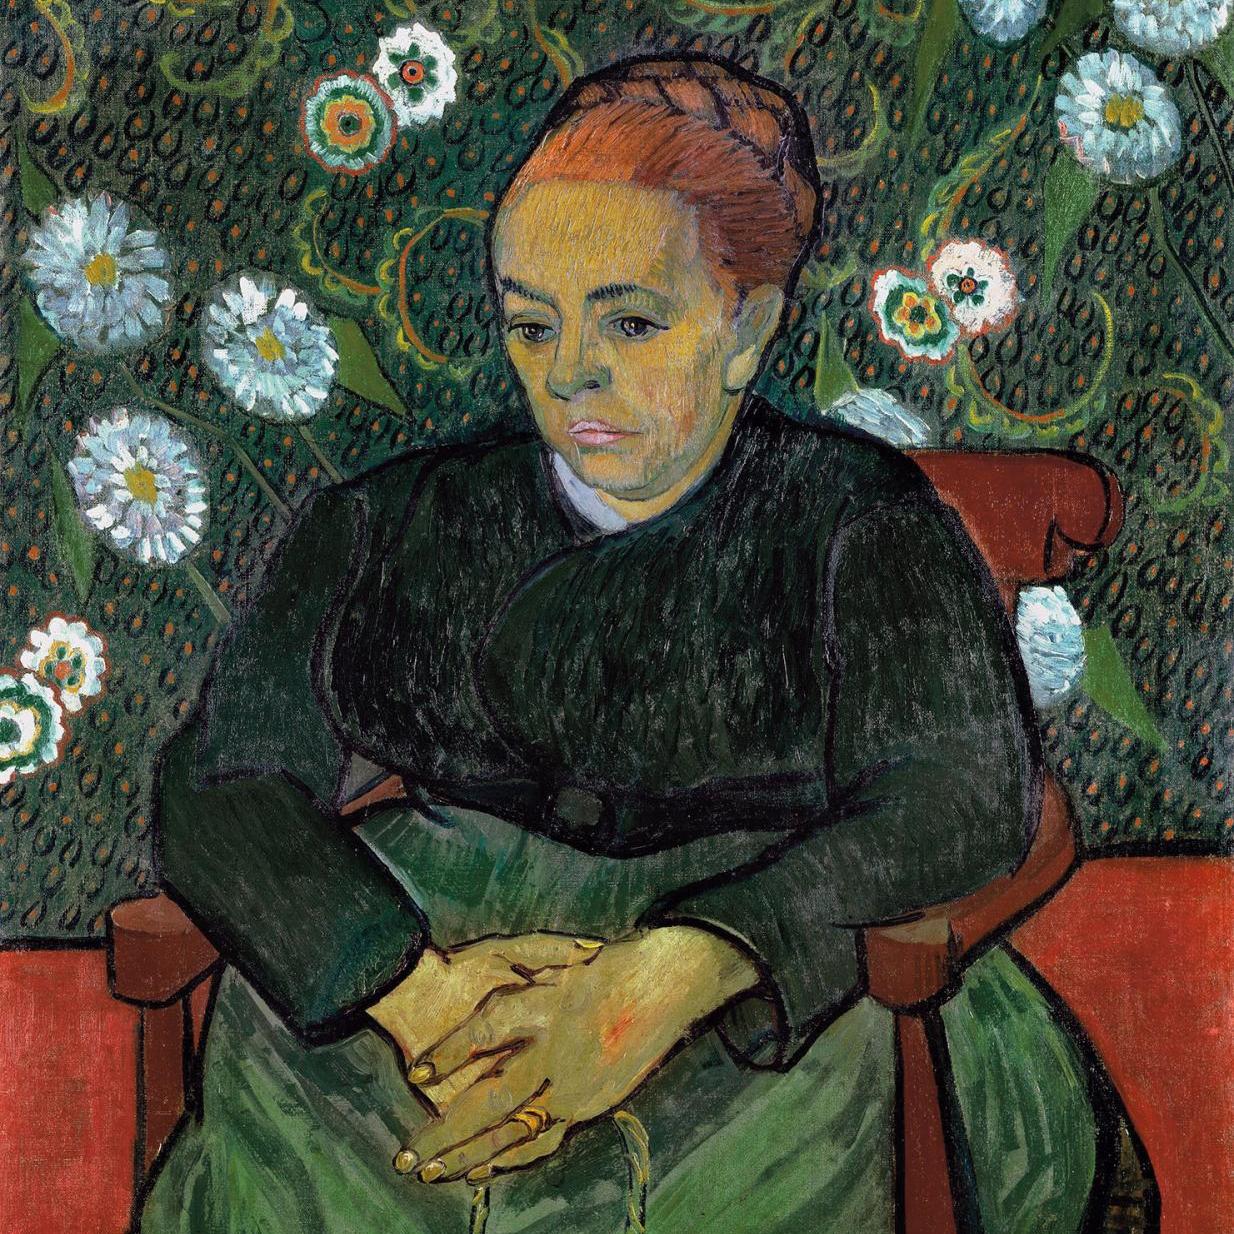 Städel Museum : Making Van Gogh. A German Love Story